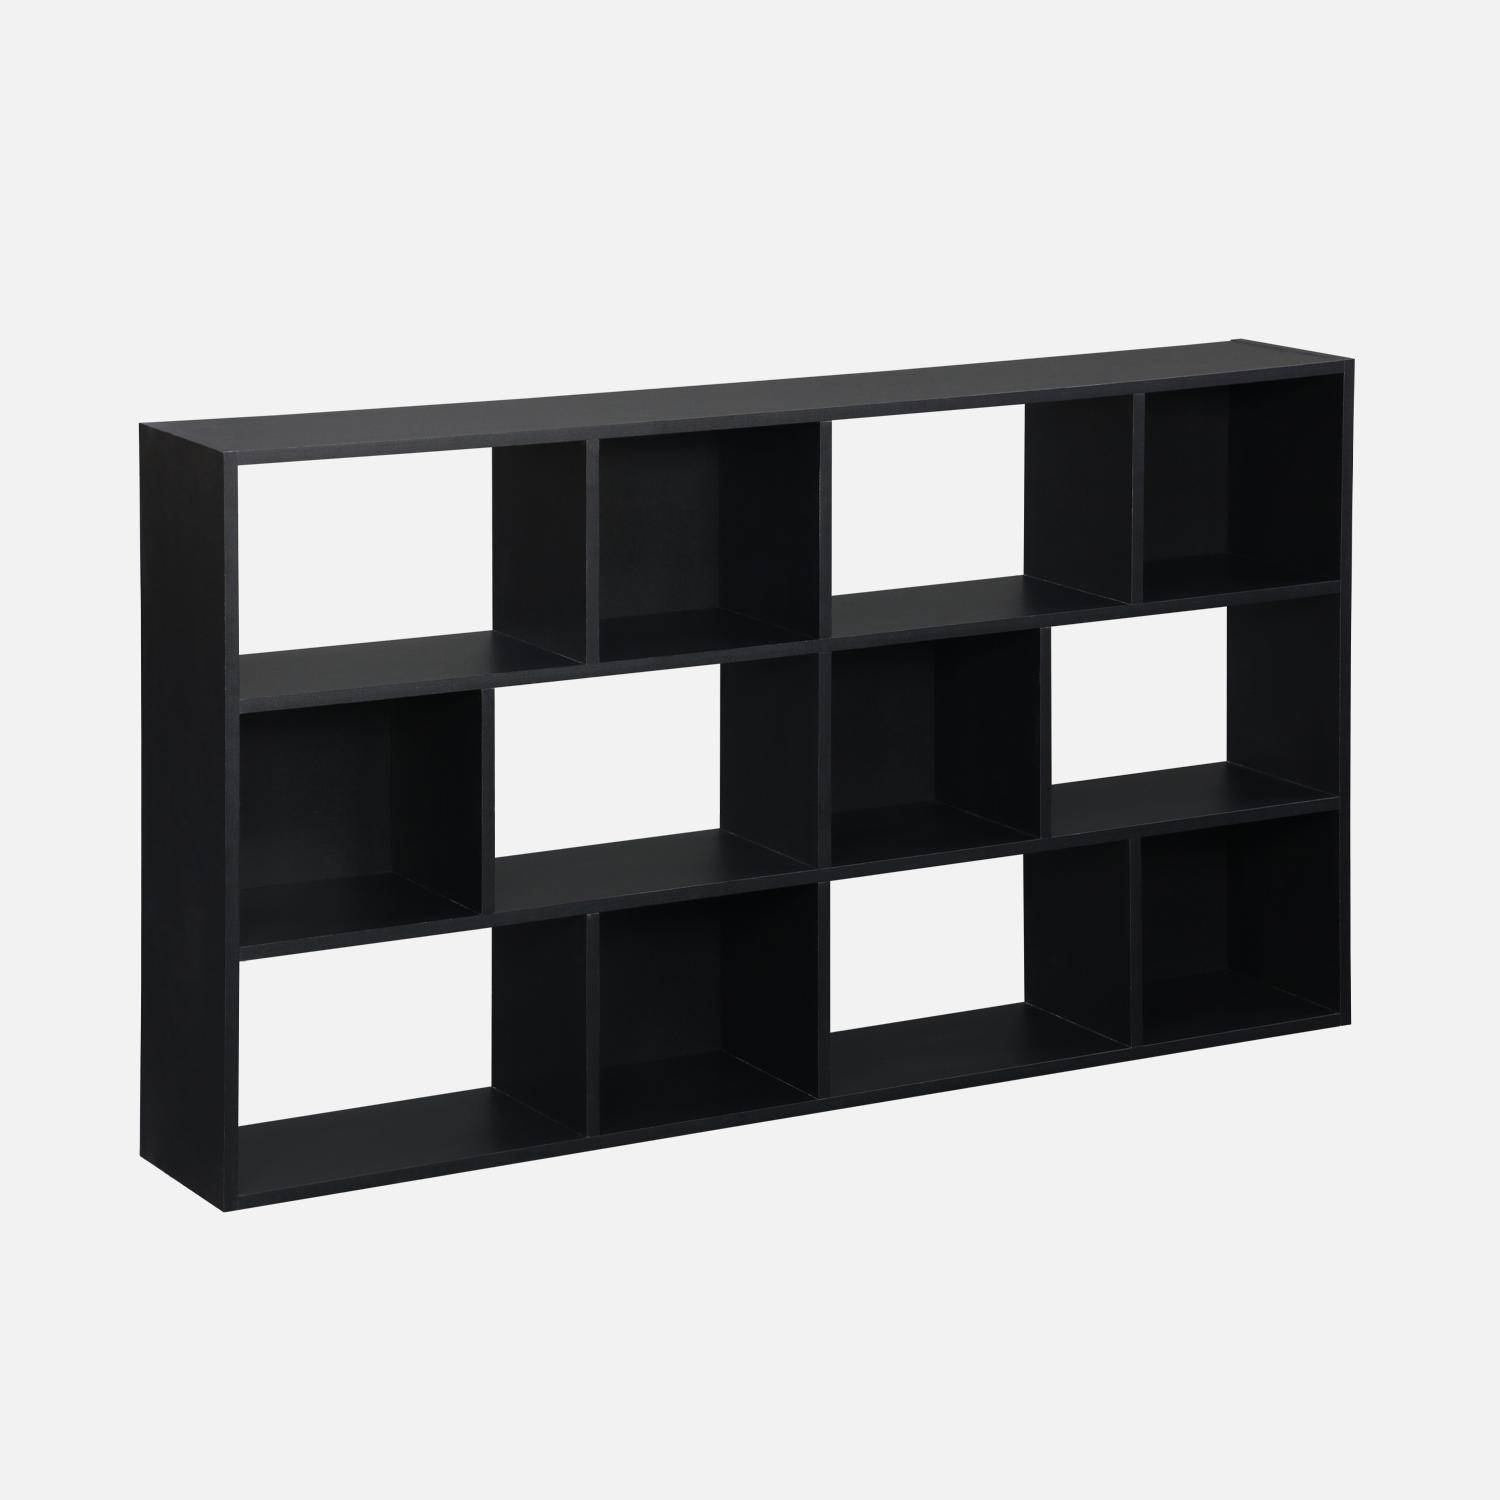 Asymmetrische zwarte design boekenkast, Pieter, 3 planken, 12 opbergvakken,sweeek,Photo1